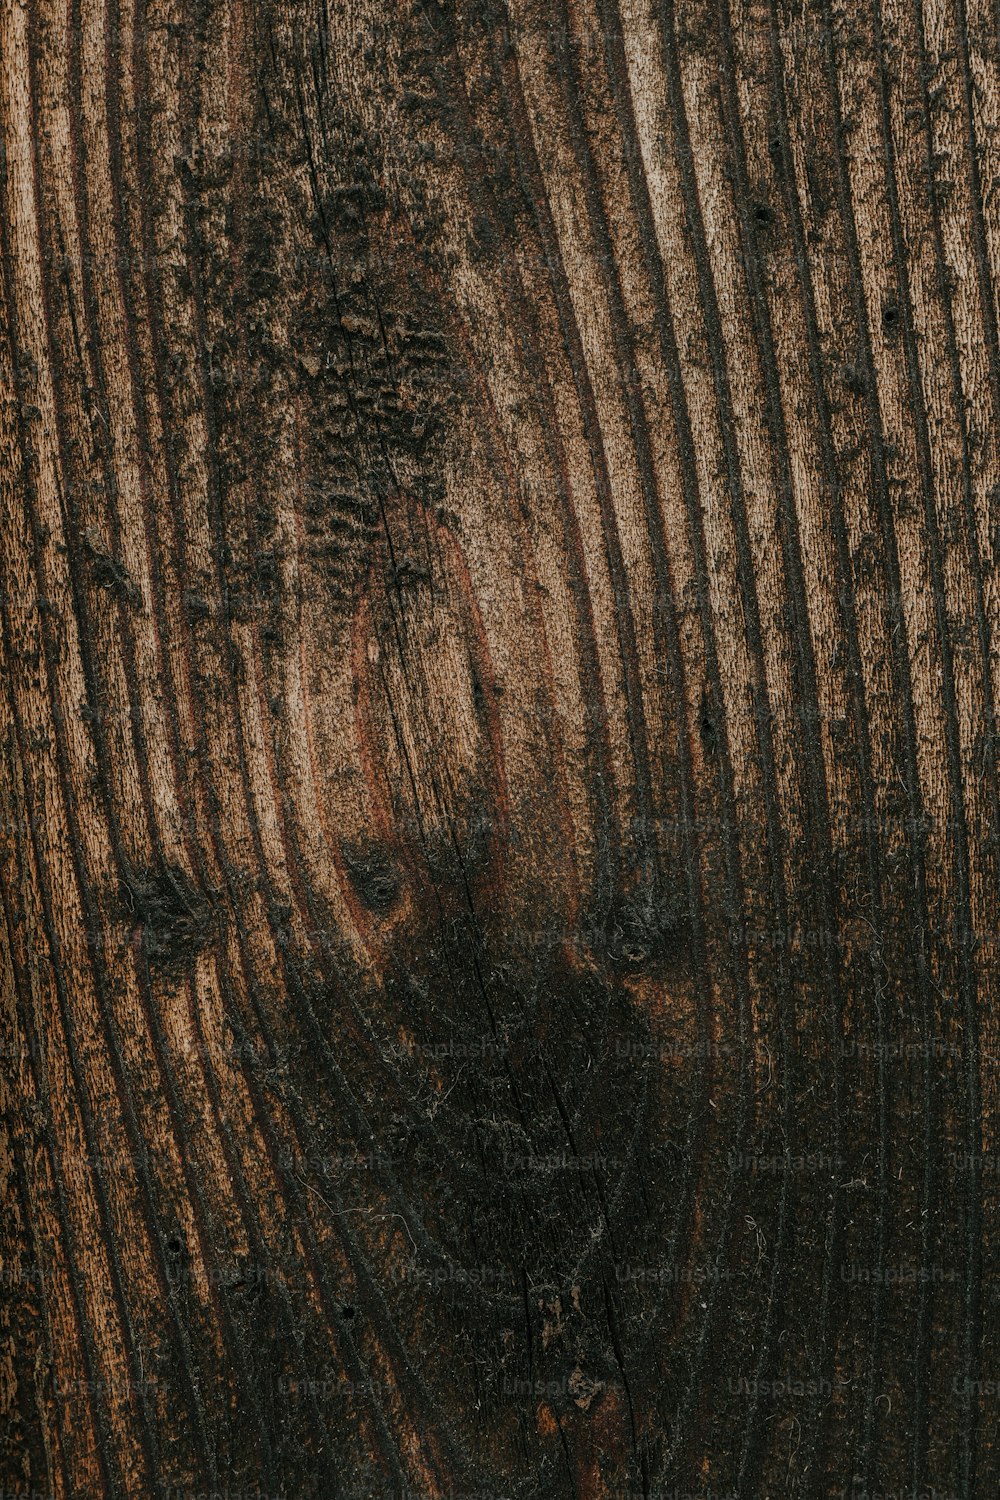 un primo piano di un tronco d'albero che mostra la corteccia